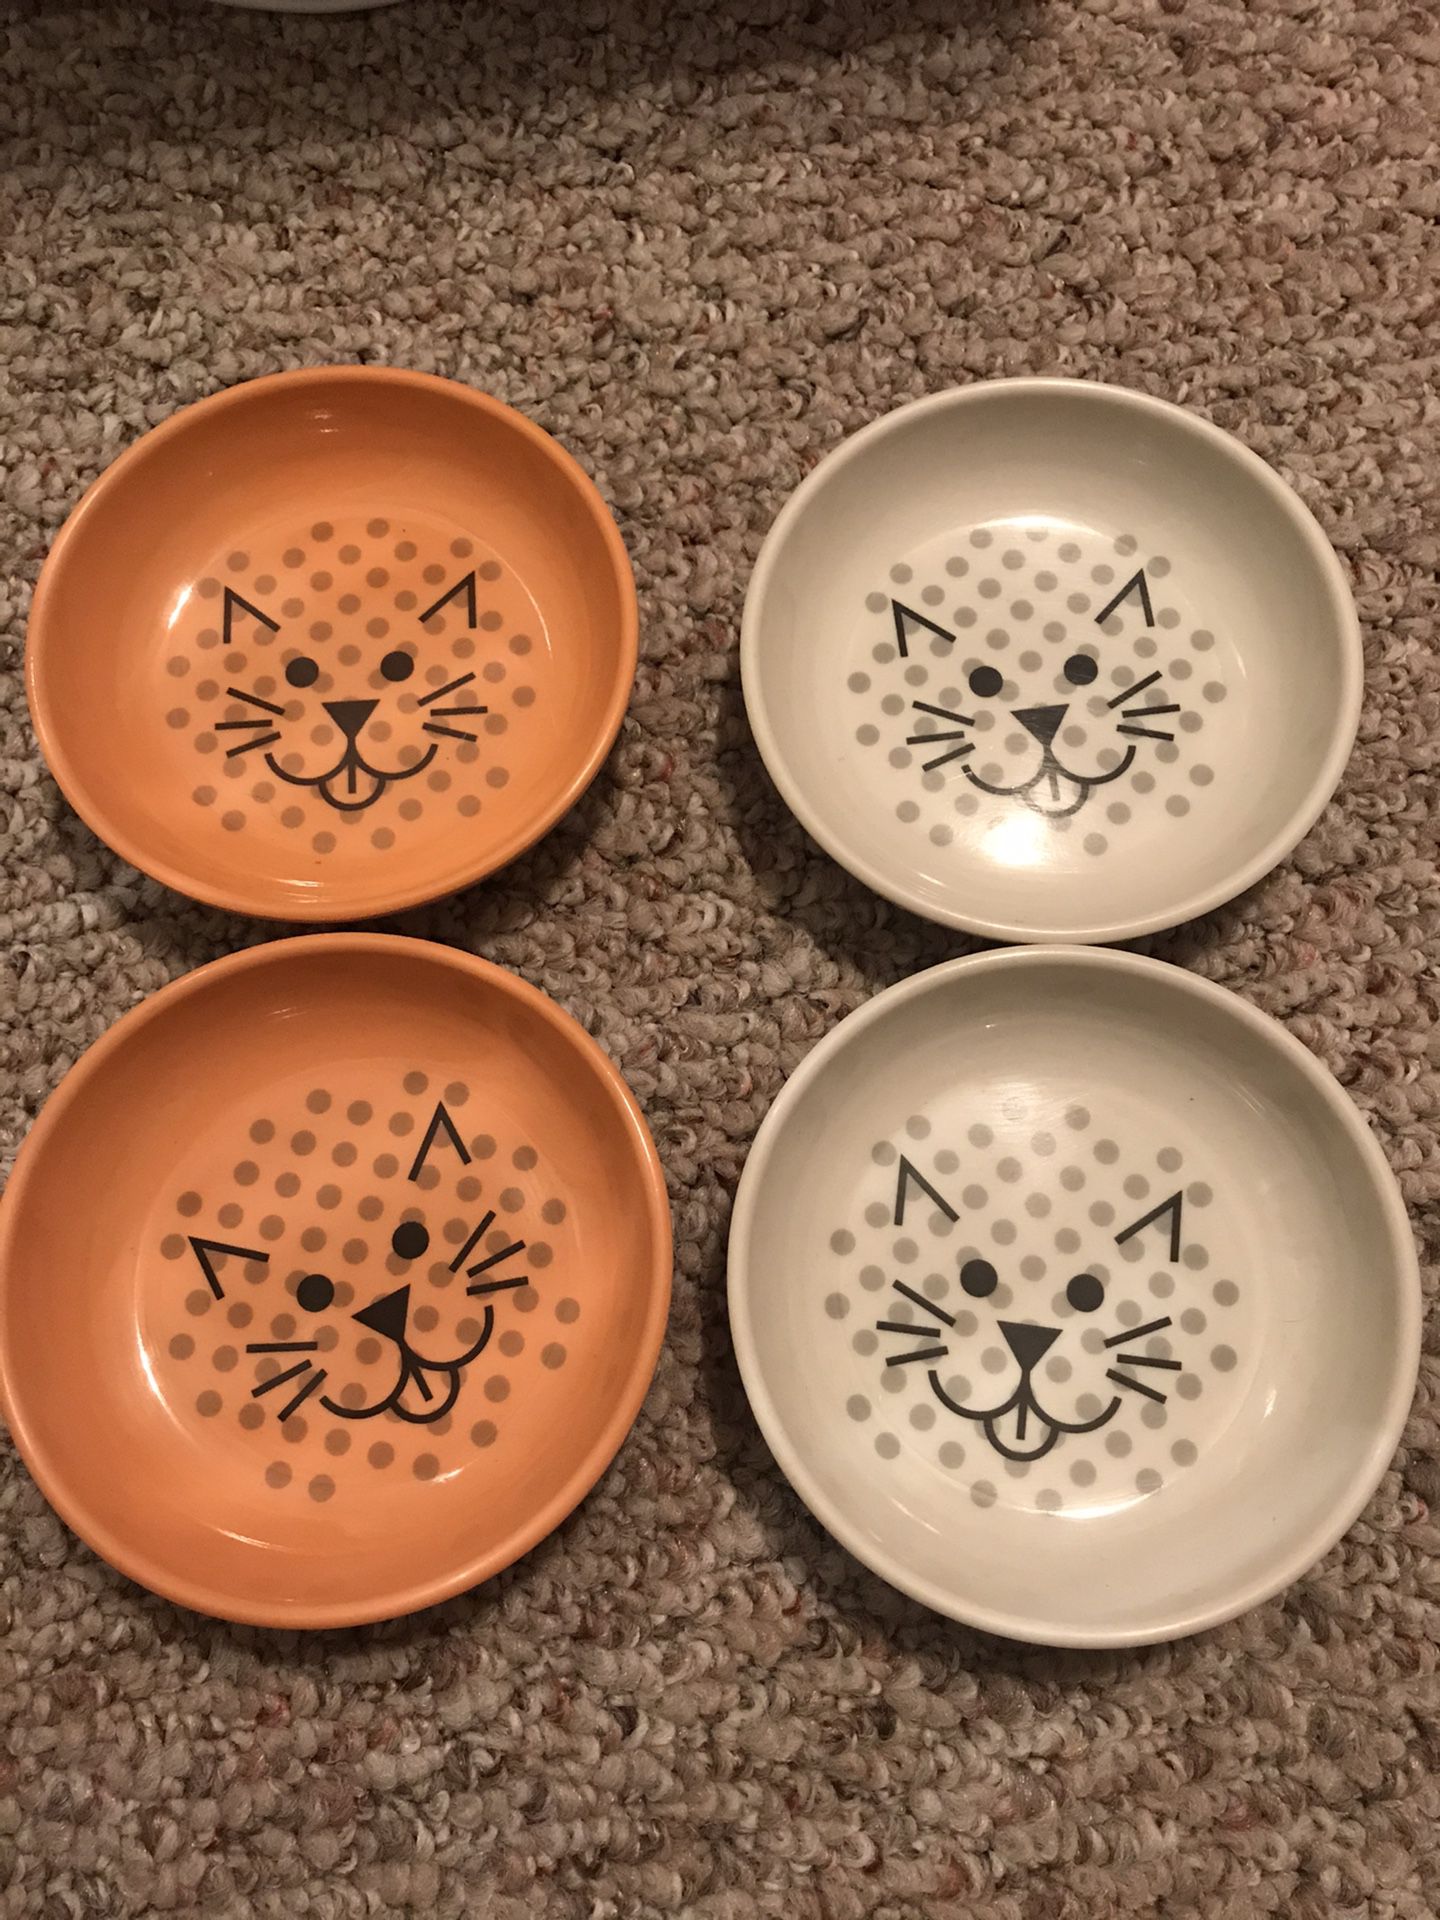 4 cat bowls